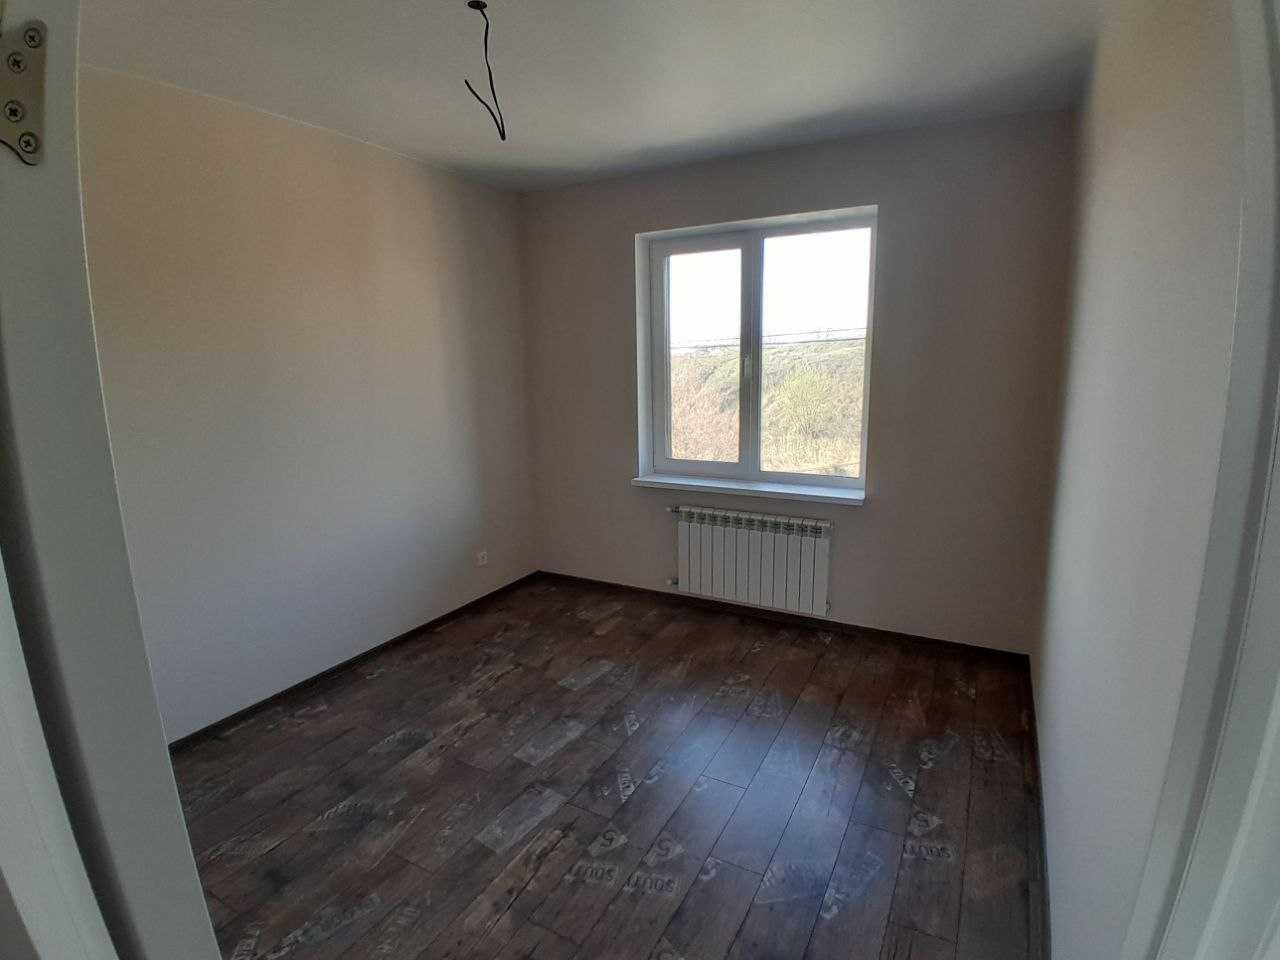 Продам будинок з ремонтом в с. Іванковичі 156 м2 5 соток без %